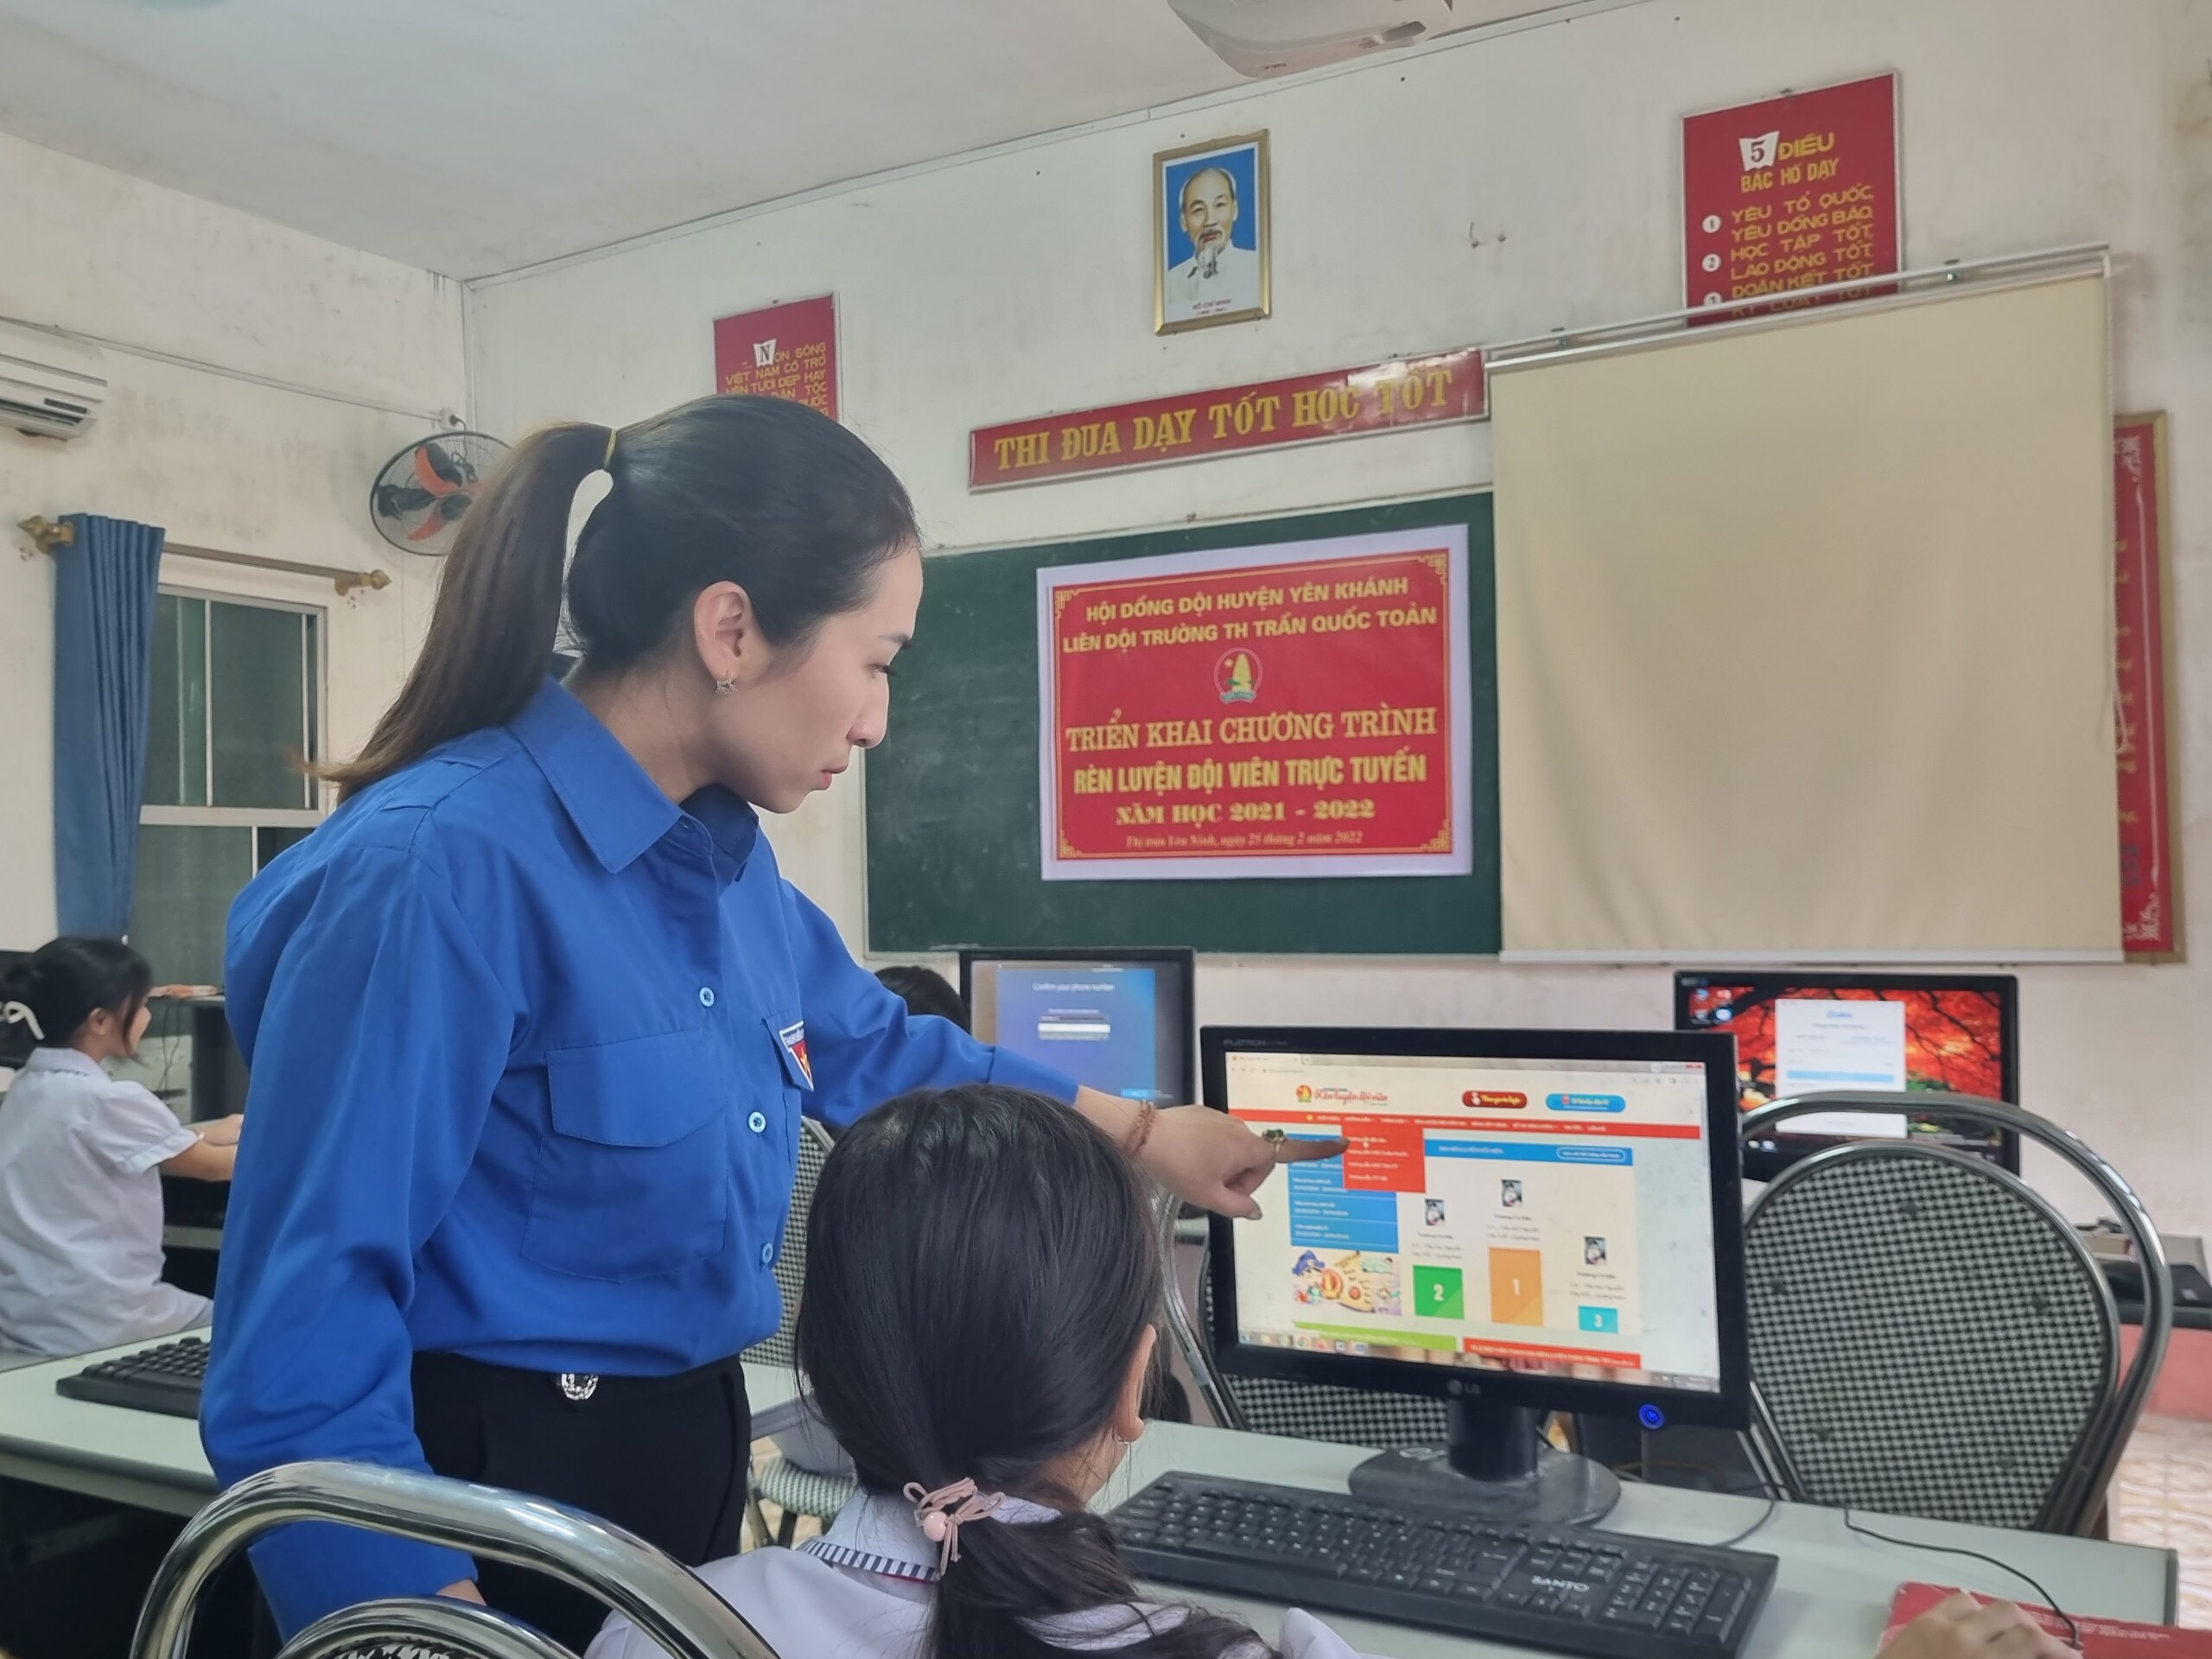 Trường Tiểu học Trần Quốc Toản rèn luyện đội viên trực tuyến năm học 2021 – 2022